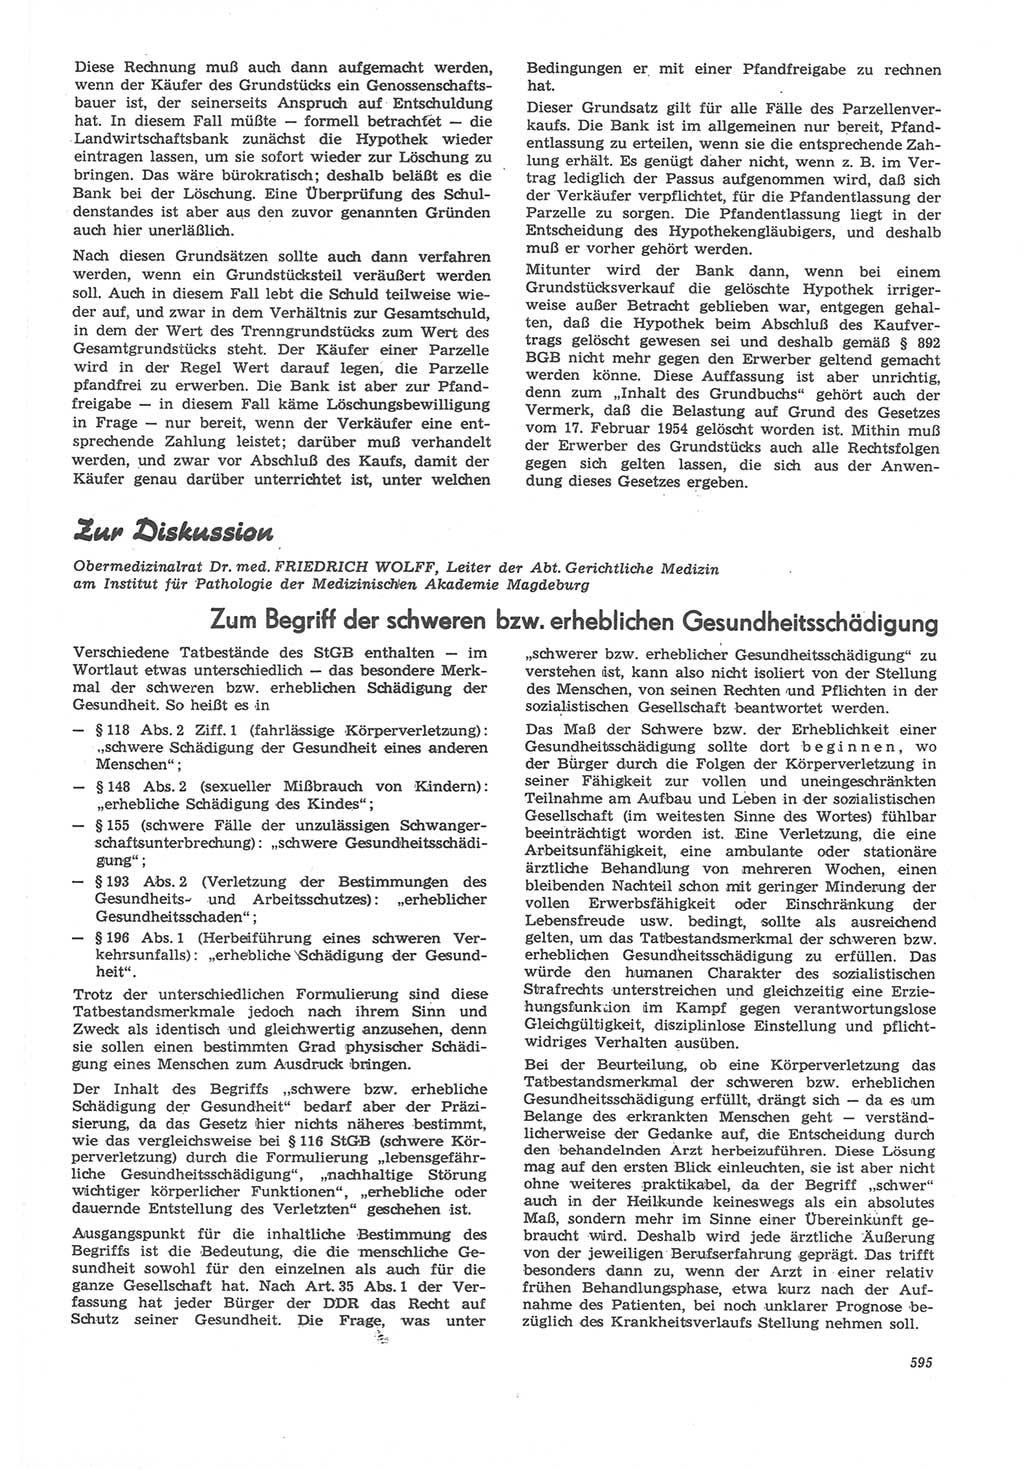 Neue Justiz (NJ), Zeitschrift für Recht und Rechtswissenschaft [Deutsche Demokratische Republik (DDR)], 22. Jahrgang 1968, Seite 595 (NJ DDR 1968, S. 595)